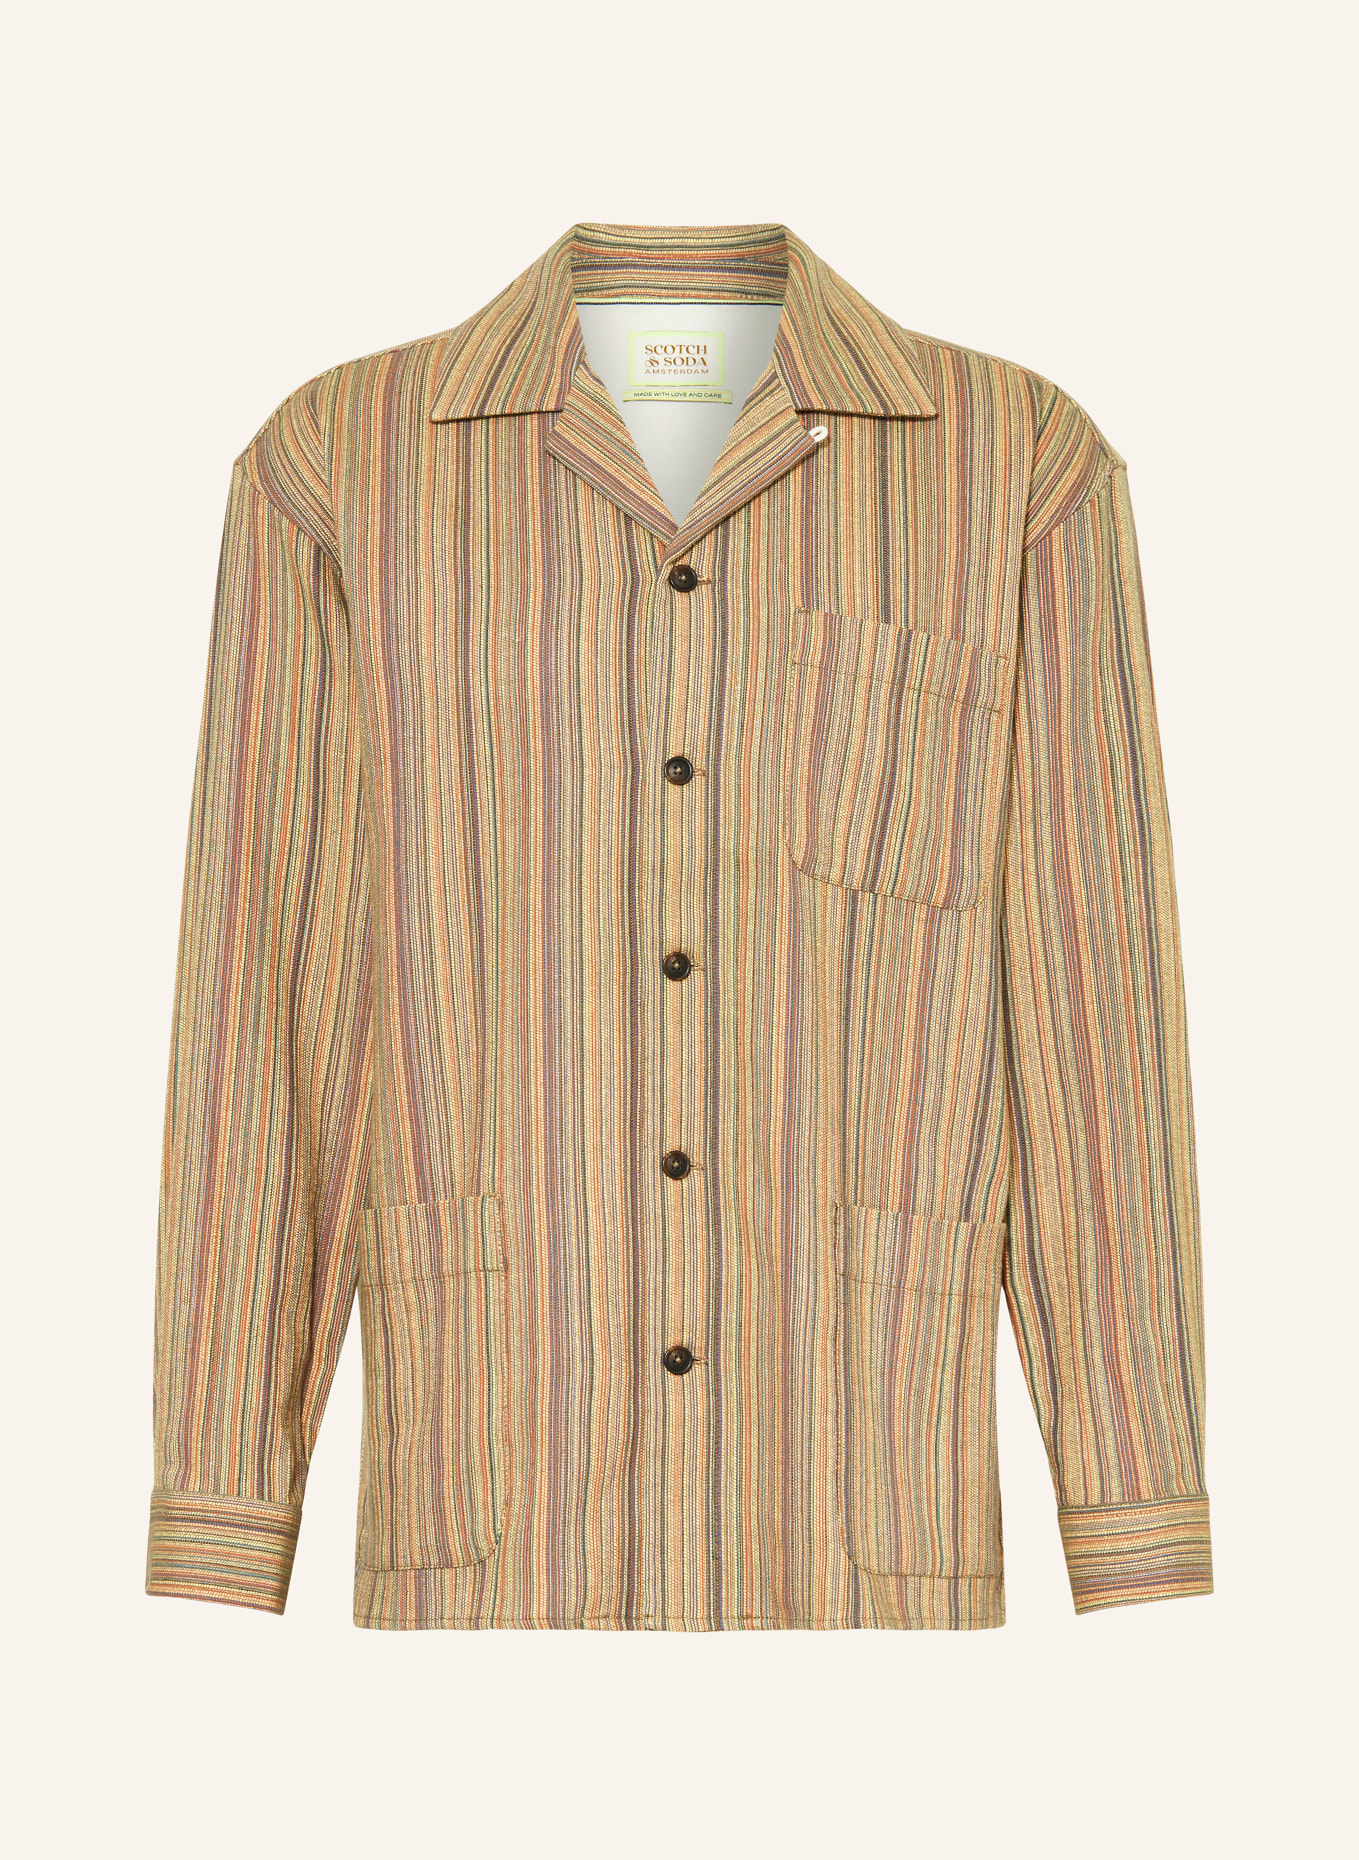 SCOTCH & SODA Jacket, Color: ORANGE/ YELLOW/ FUCHSIA (Image 1)